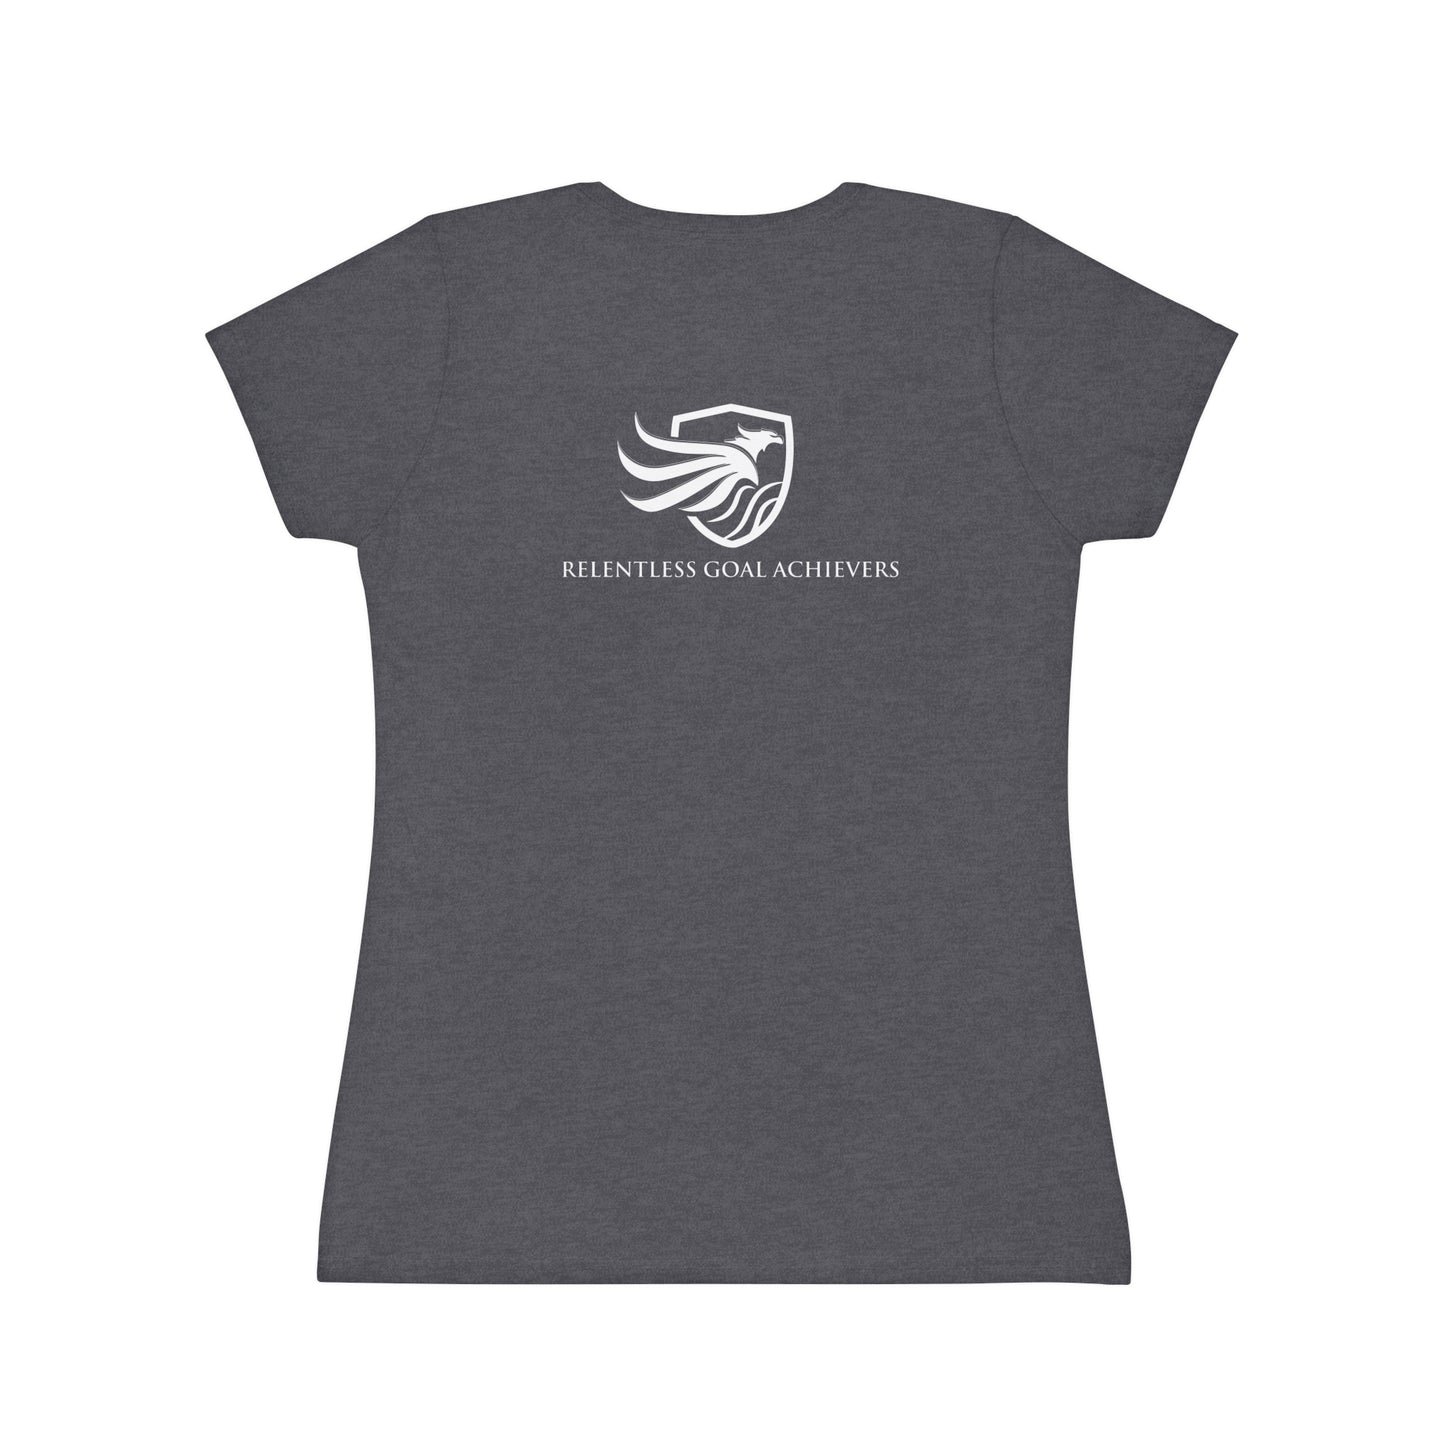 Women's Iconic T-Shirt - Got Goals?